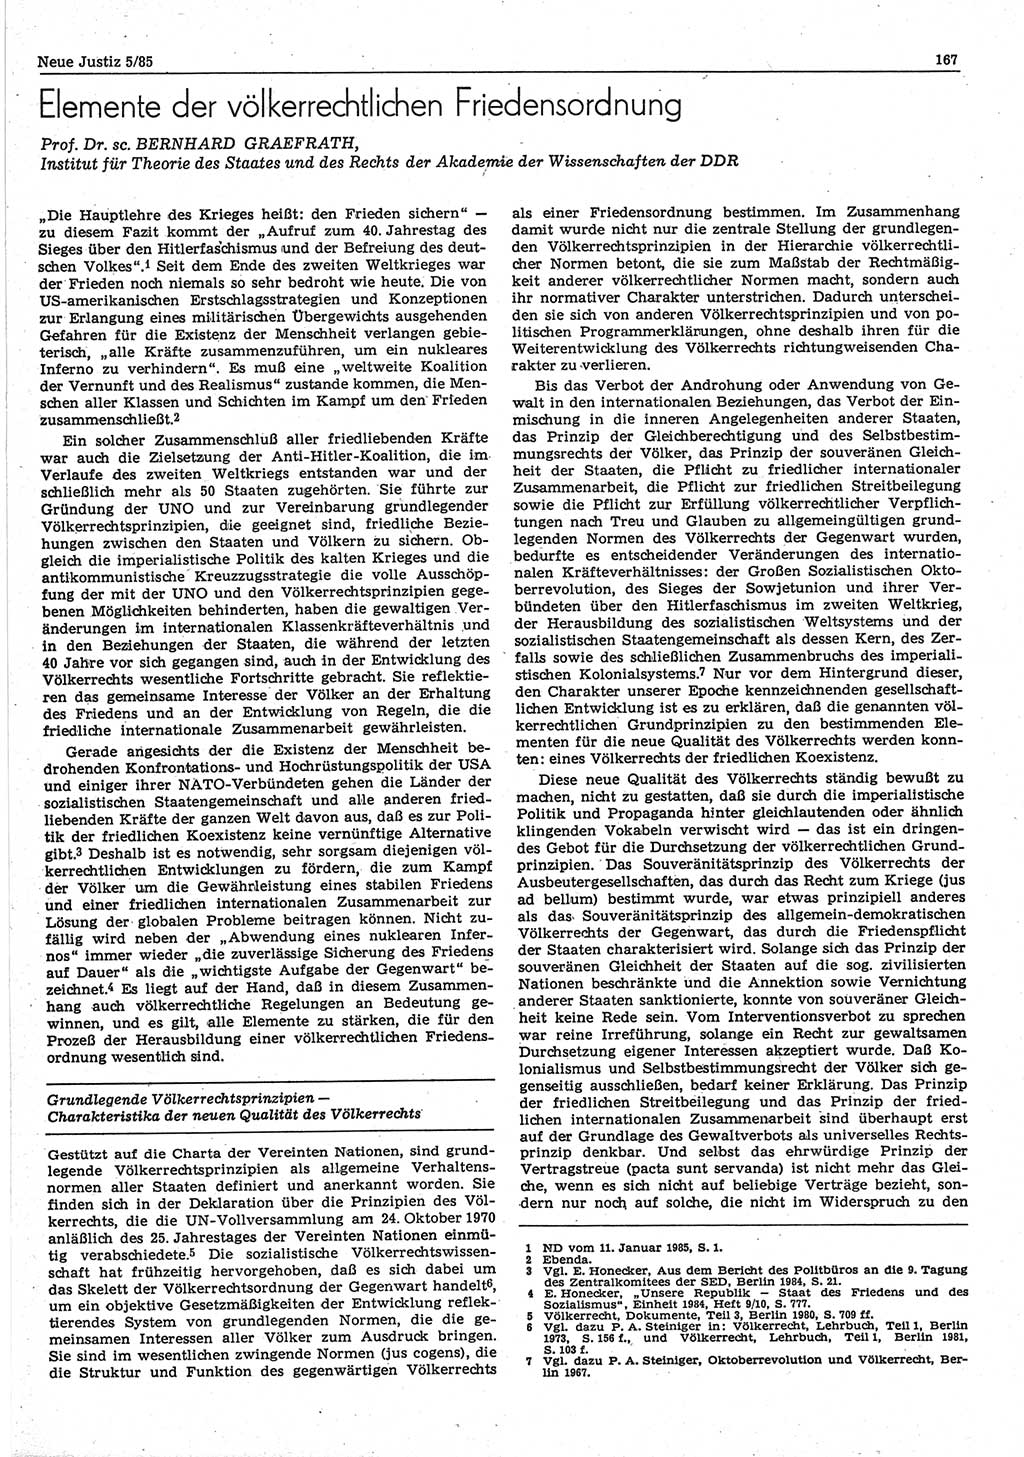 Neue Justiz (NJ), Zeitschrift für sozialistisches Recht und Gesetzlichkeit [Deutsche Demokratische Republik (DDR)], 39. Jahrgang 1985, Seite 167 (NJ DDR 1985, S. 167)